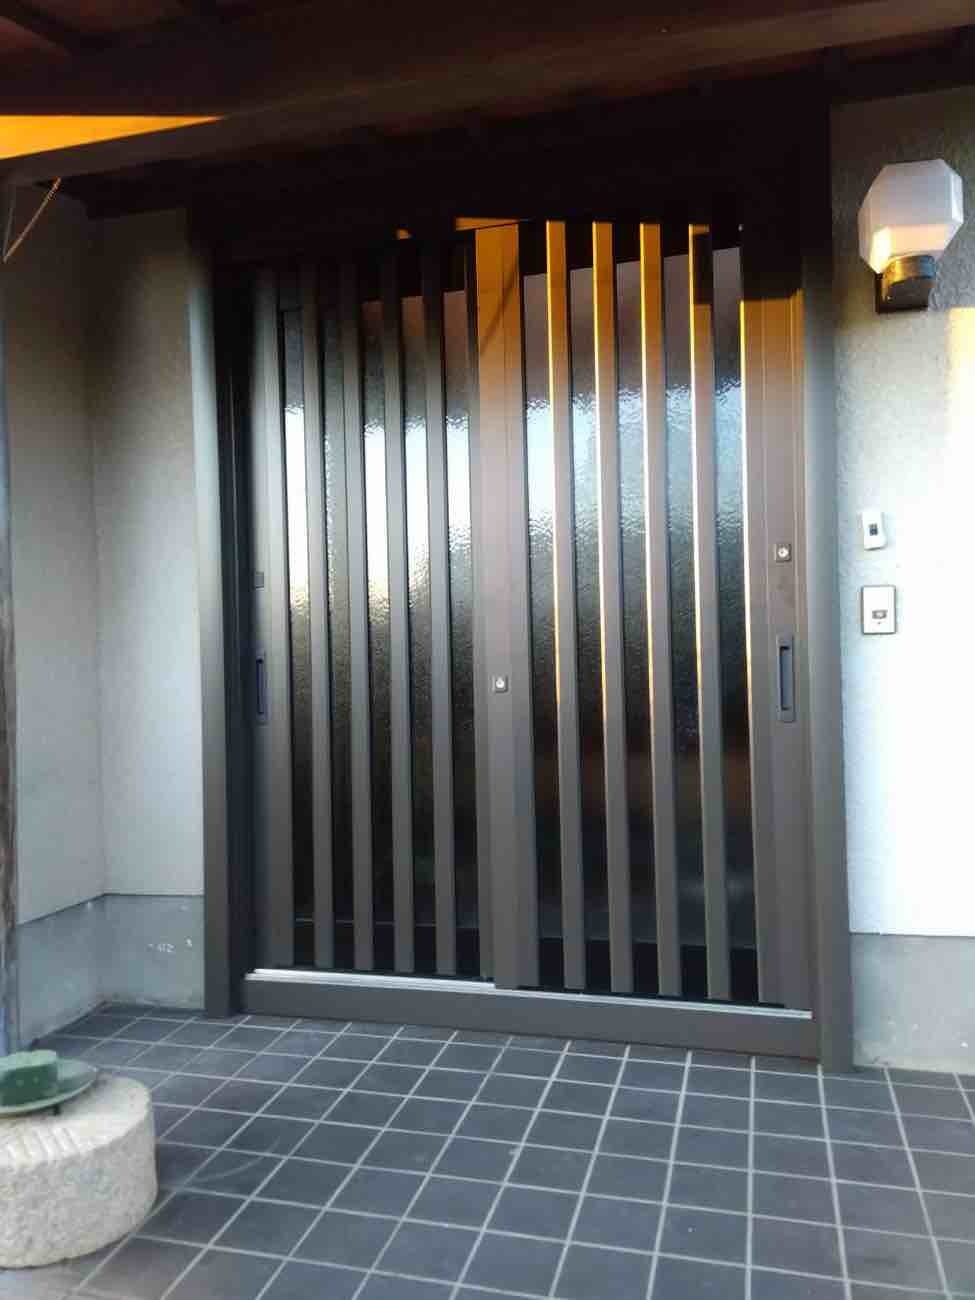 【埼玉県三郷市】T様邸玄関ドア交換工事が完了しました。省エネ 断熱リフォーム リクシル リシェント 画像